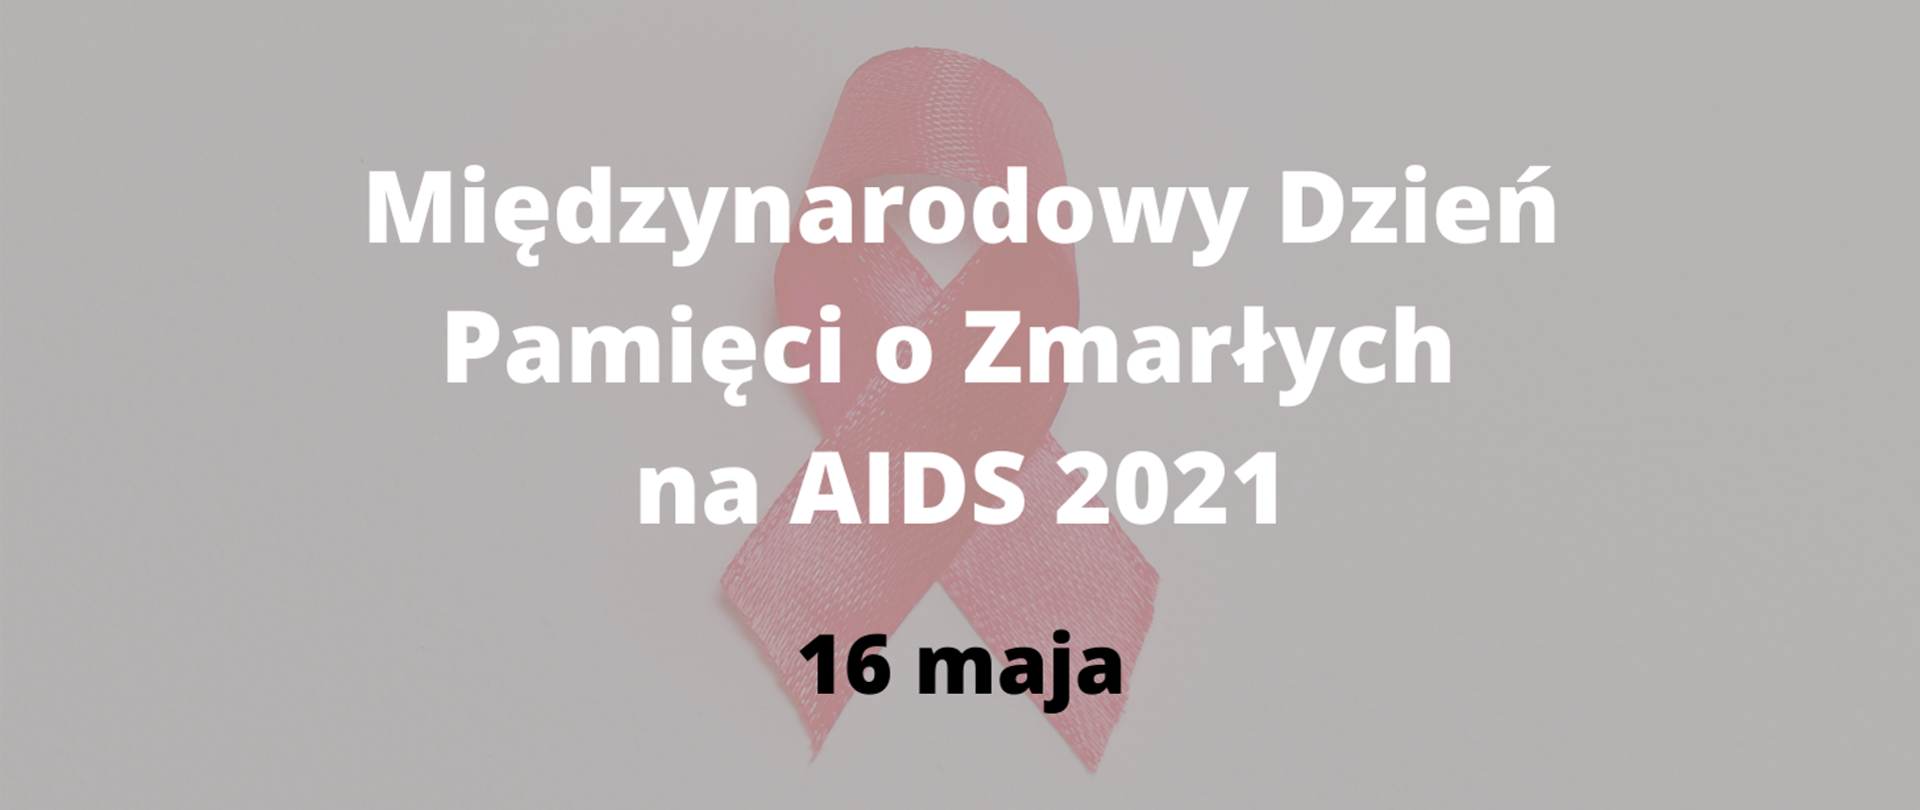 Na zdjęciu widnieje napis: Międzynarodowy Dzień Pamięci o Zmarłych na AIDS 2021 16 maja